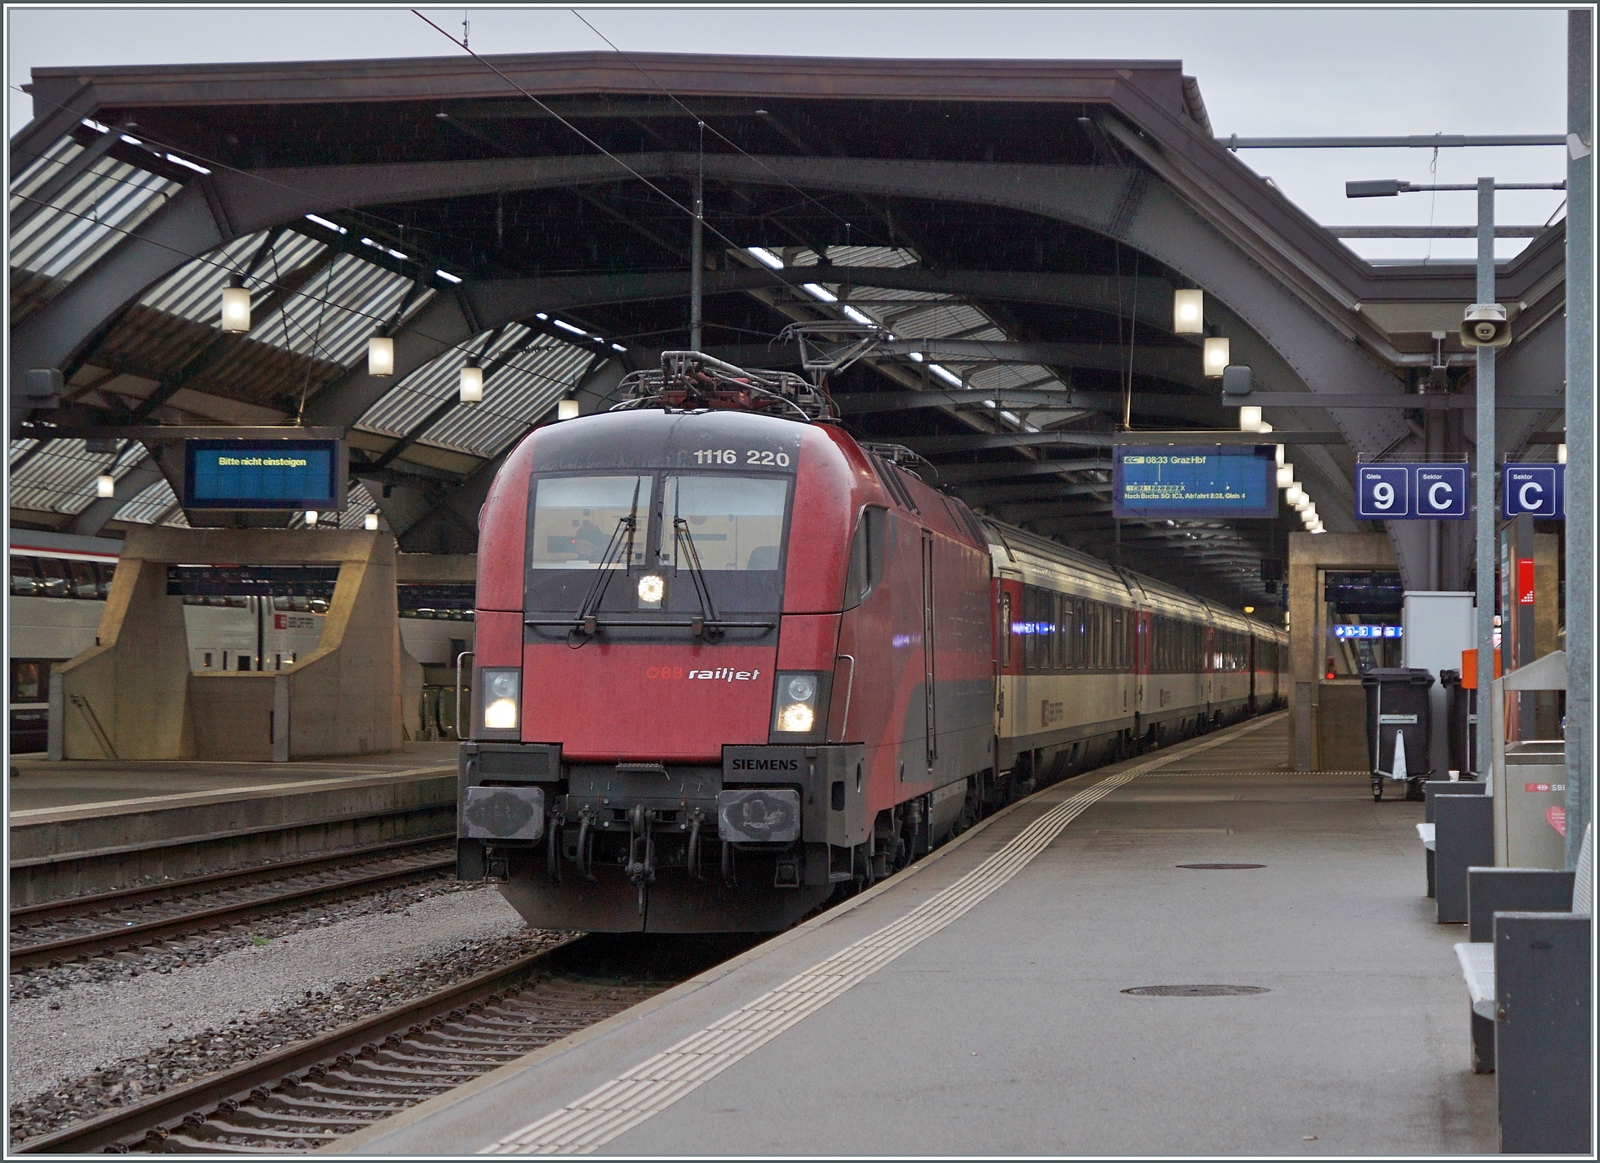 Die ÖBB 1116 220 stellt in Zürich den EuroCity  Transalpin  mit der Zugsnummer EC 19793 nach Graz bereit. Zwar sind ÖBB Lokomotiven in Zürich HB keine Seltenheit, aber sie kommen jeweils mit RJ-Garnituren nach Zürich. Eine ÖBB 1116 vor SBB Wagen hingegen stellt schon die Ausnahme dar. Der Zug ist aus drei SBB B, eine SBB A einem ÖBB WR, einem ÖBB A und einem ÖBB (B)D formiert, wenn meine Erinnerung stimmen. Da dieses Bild beim Umsteigen entstand, hatte ich nicht die Zeit, mir den ganzen Zug in Ruhe anzusehen. Der EC 19793  Transalpin  hat infolge Bauarbeiten den ungewohnten Laufweg Zürich (ab 8:33) - Bregenz - München - Salzburg - Schwarzach St. Veit Bischofshofen - Leoben - Graz (an 21:32) und wird somit  12 Stunden und 59 Minuten unterwegs sein. Wo die ÖBB 1116 220 den Zug verlassen wird und durch eine andere Lok ersetzt wird, können mir vielleicht die Fotografenkollegen aus Österreich verraten.

19. Okt. 2023